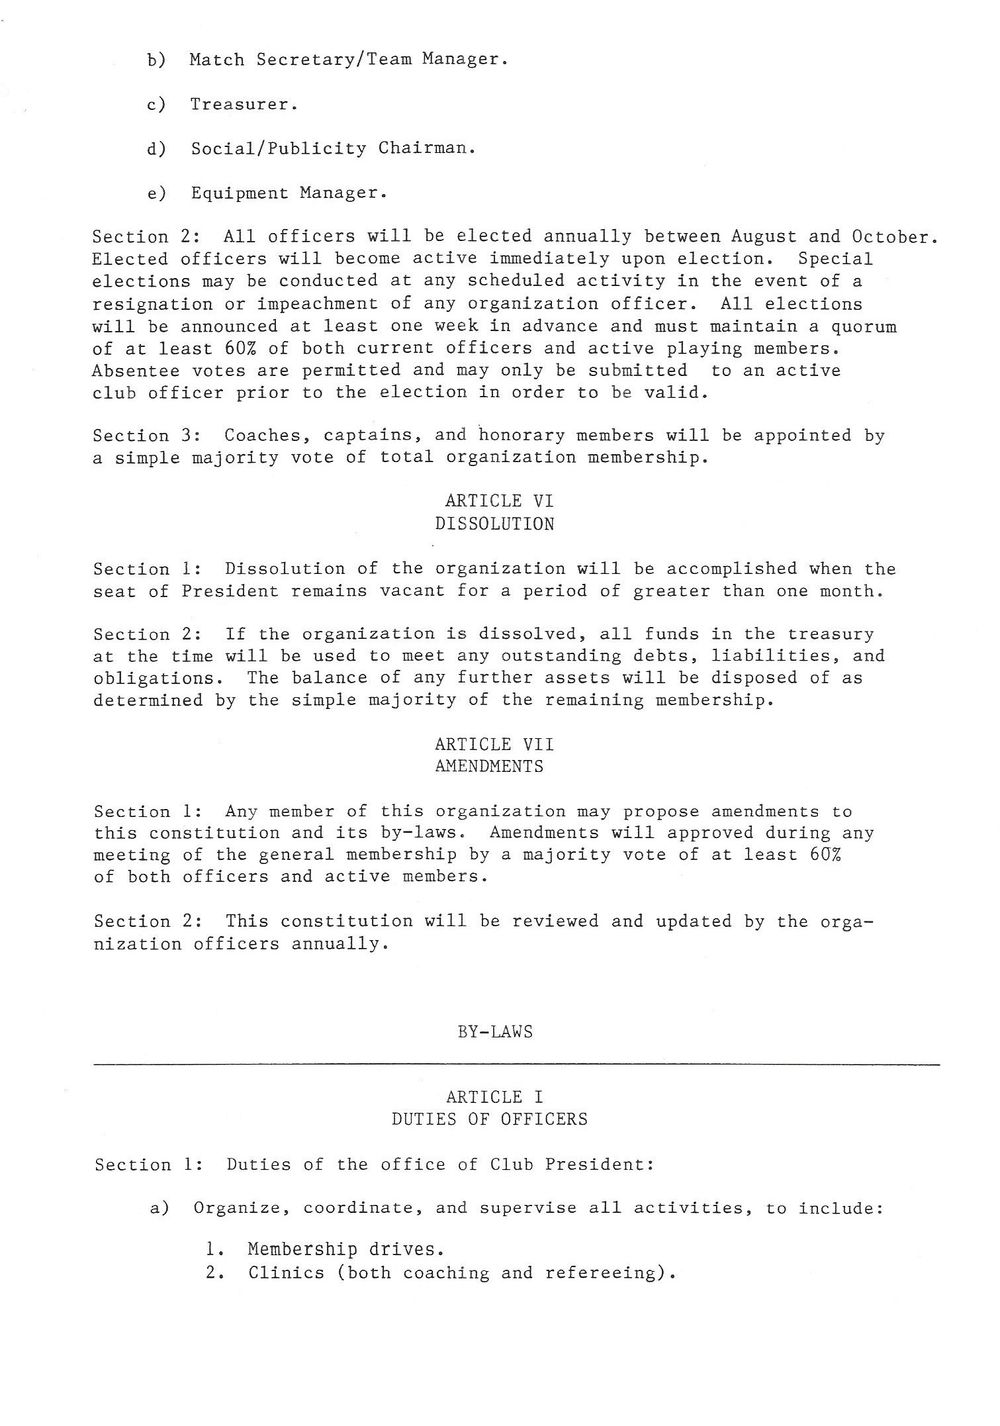 1989 Baumholder constitution 3.jpg